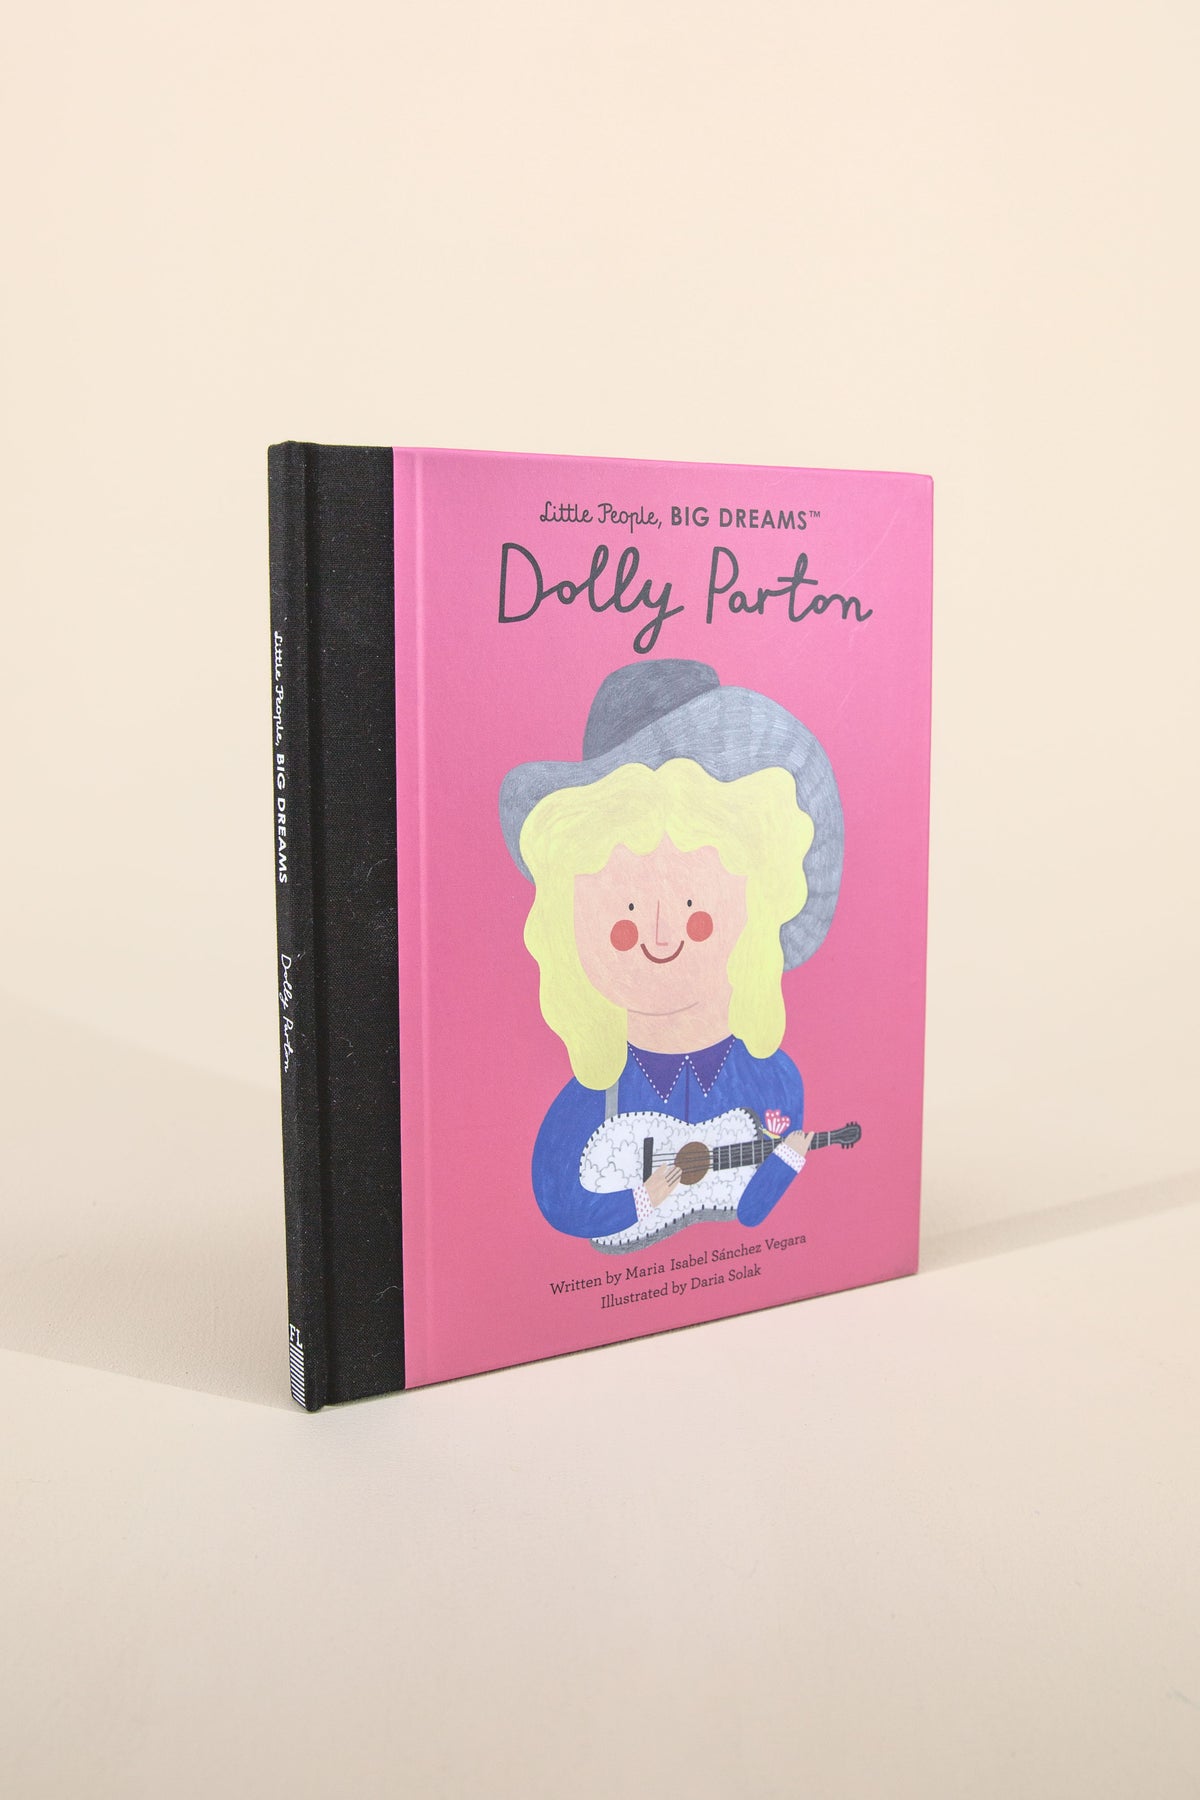 little people, big dreams: dolly parton